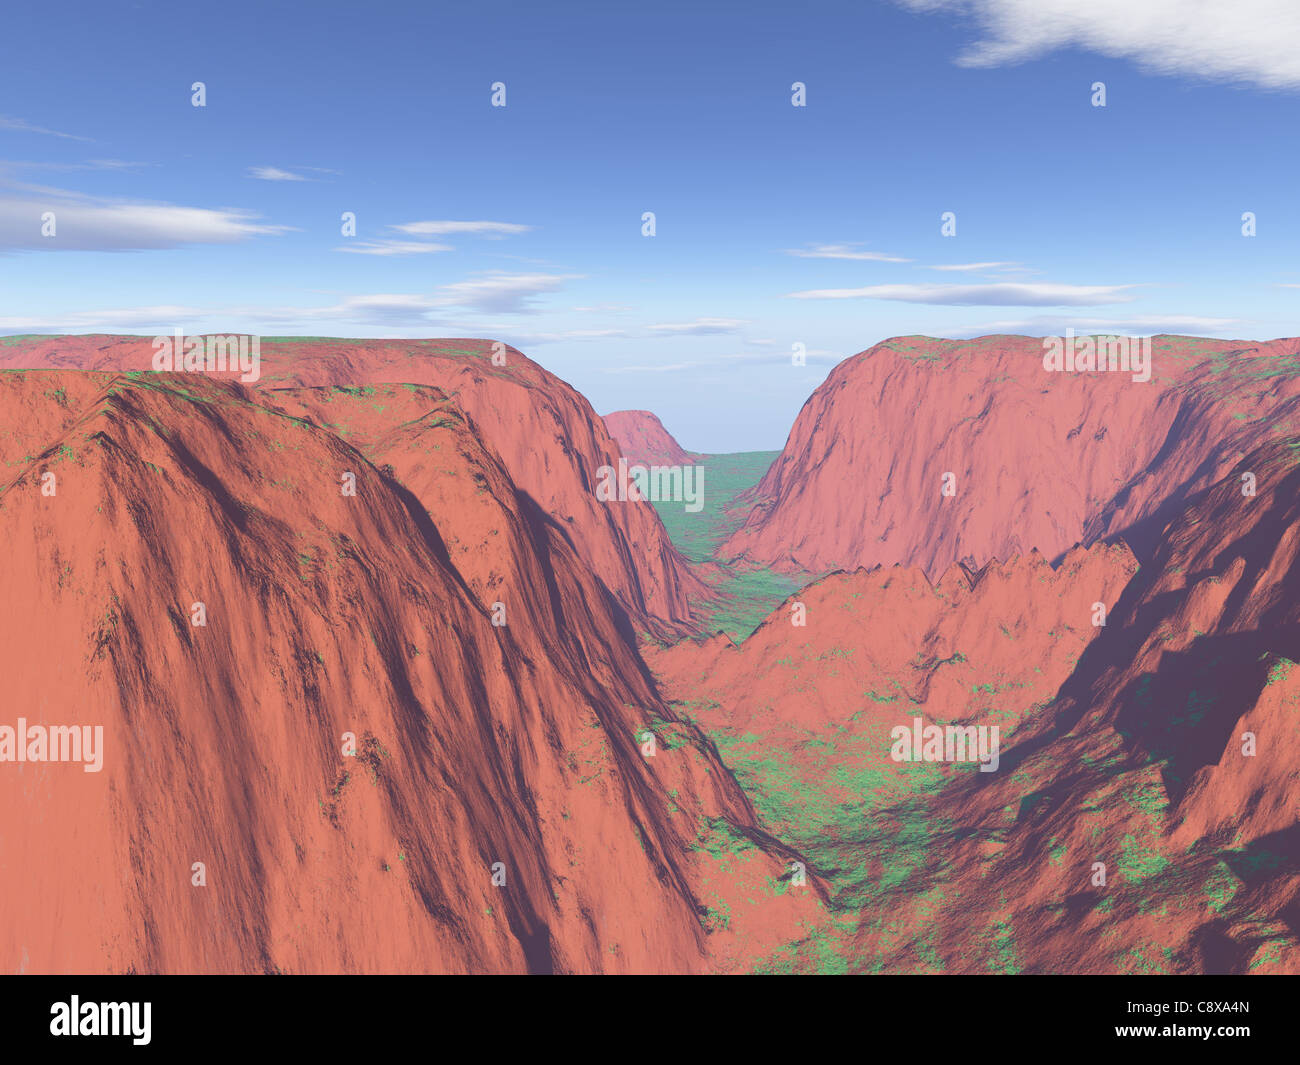 Paysage de montagne créé par ordinateur qui ressemble à une gamme de grès rouge Banque D'Images